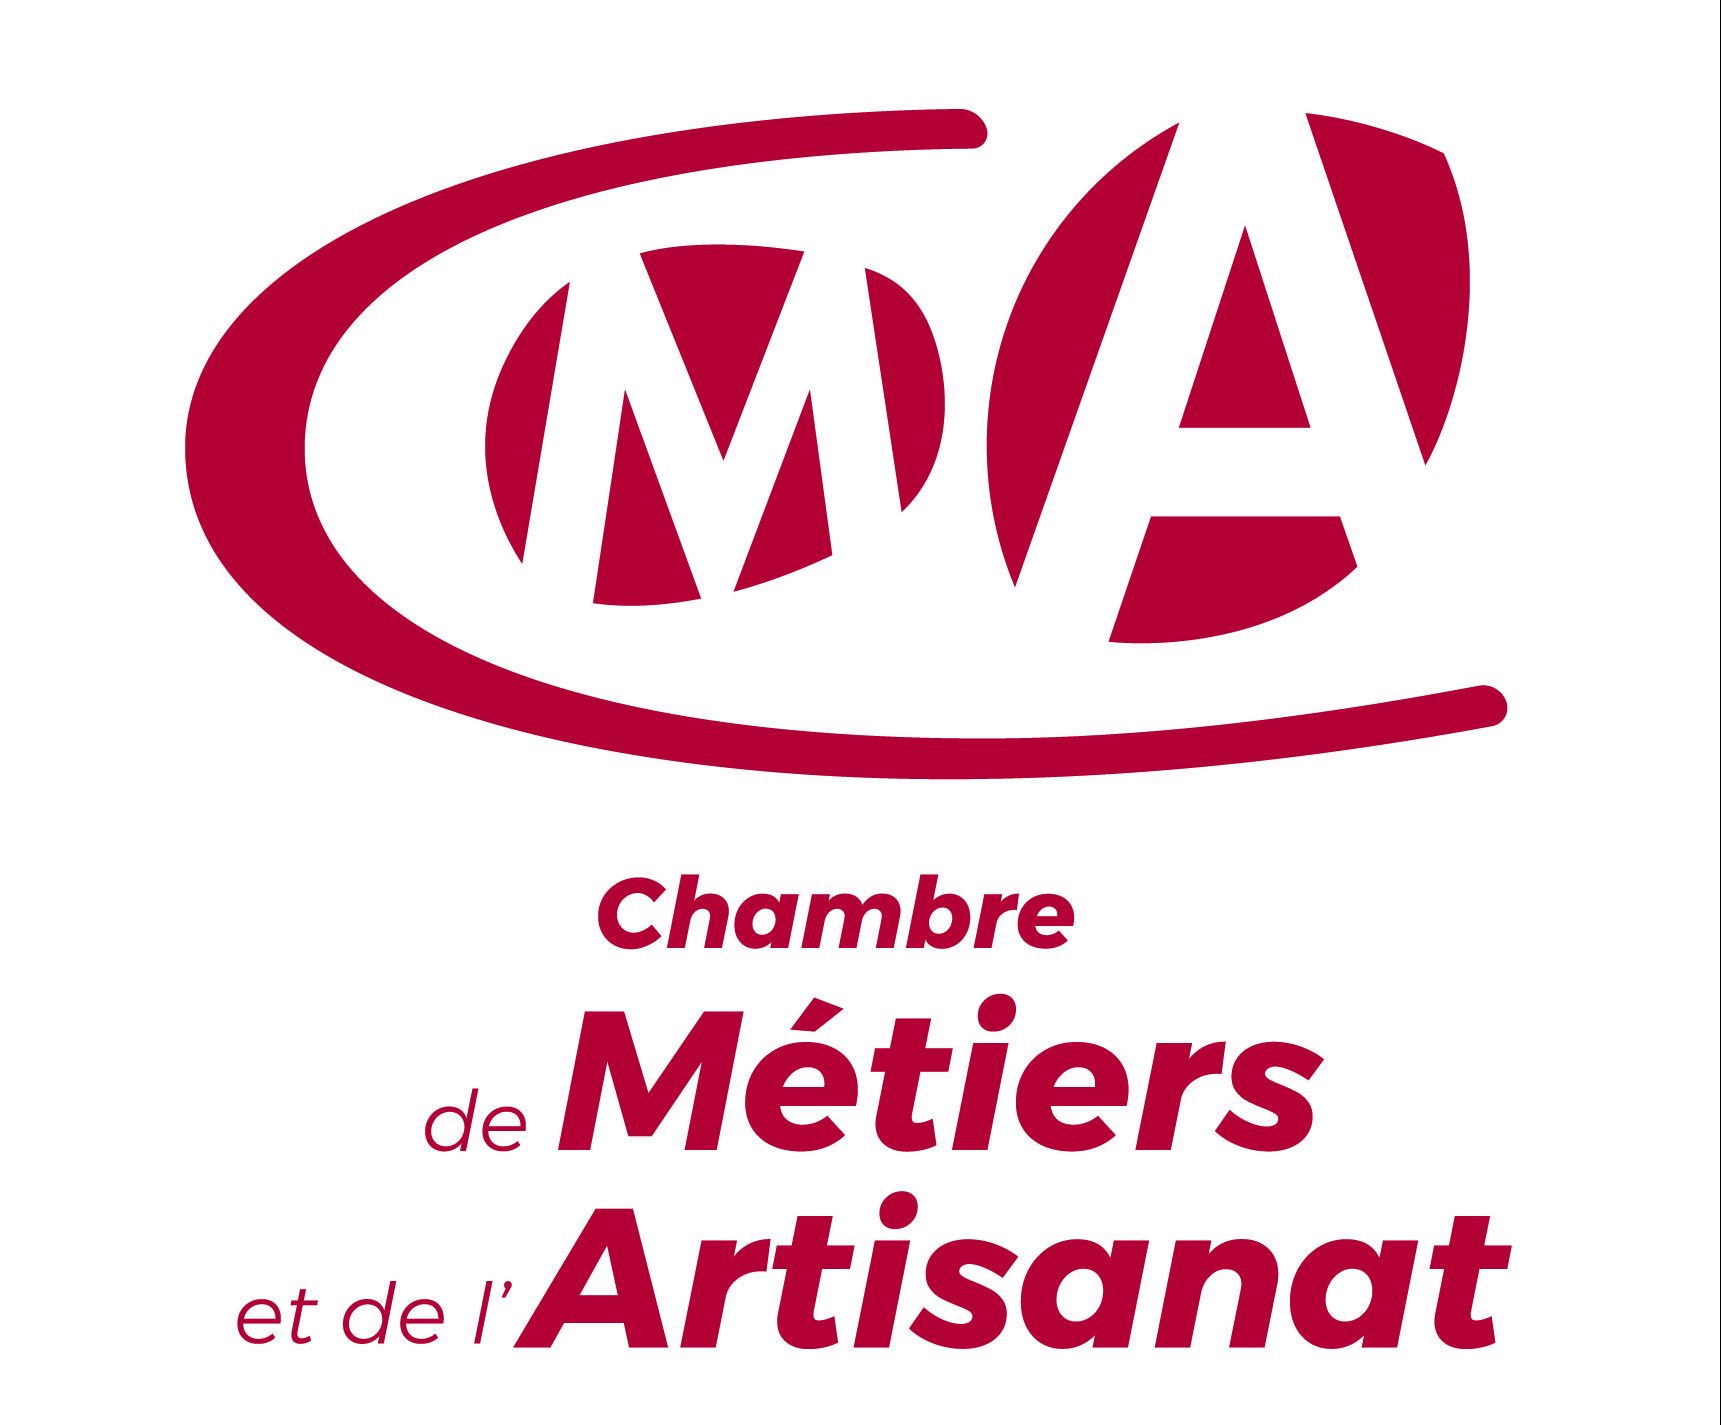 cmjn-Logo-CMA-Normandie-rouge